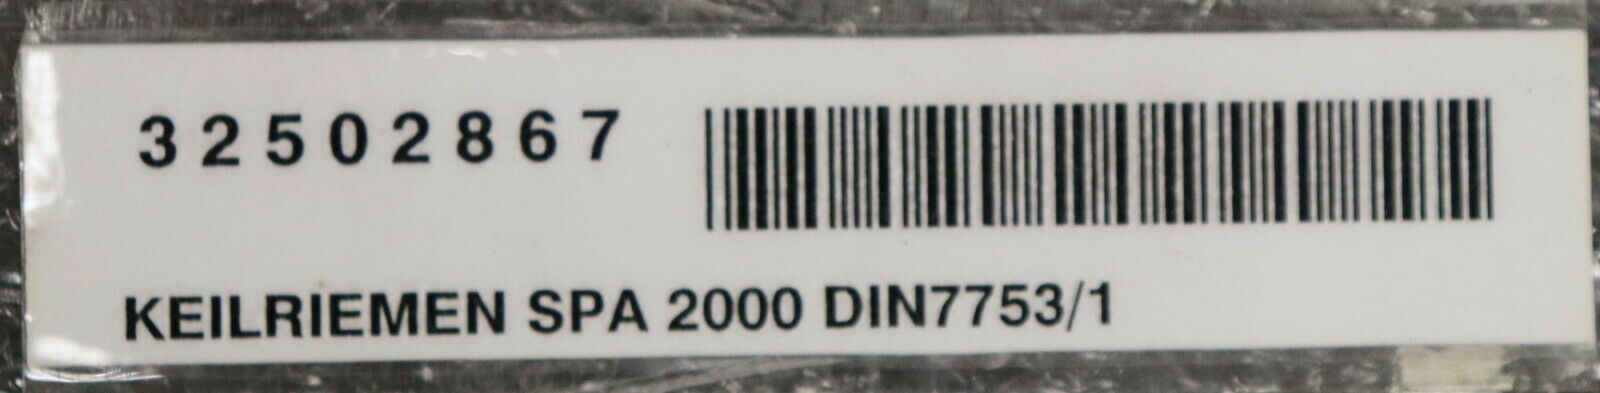 STRONGBELT 2 Stück Hochleistungskeilriemen SPA 2000 Lw DIN7753/1 Profil SPA